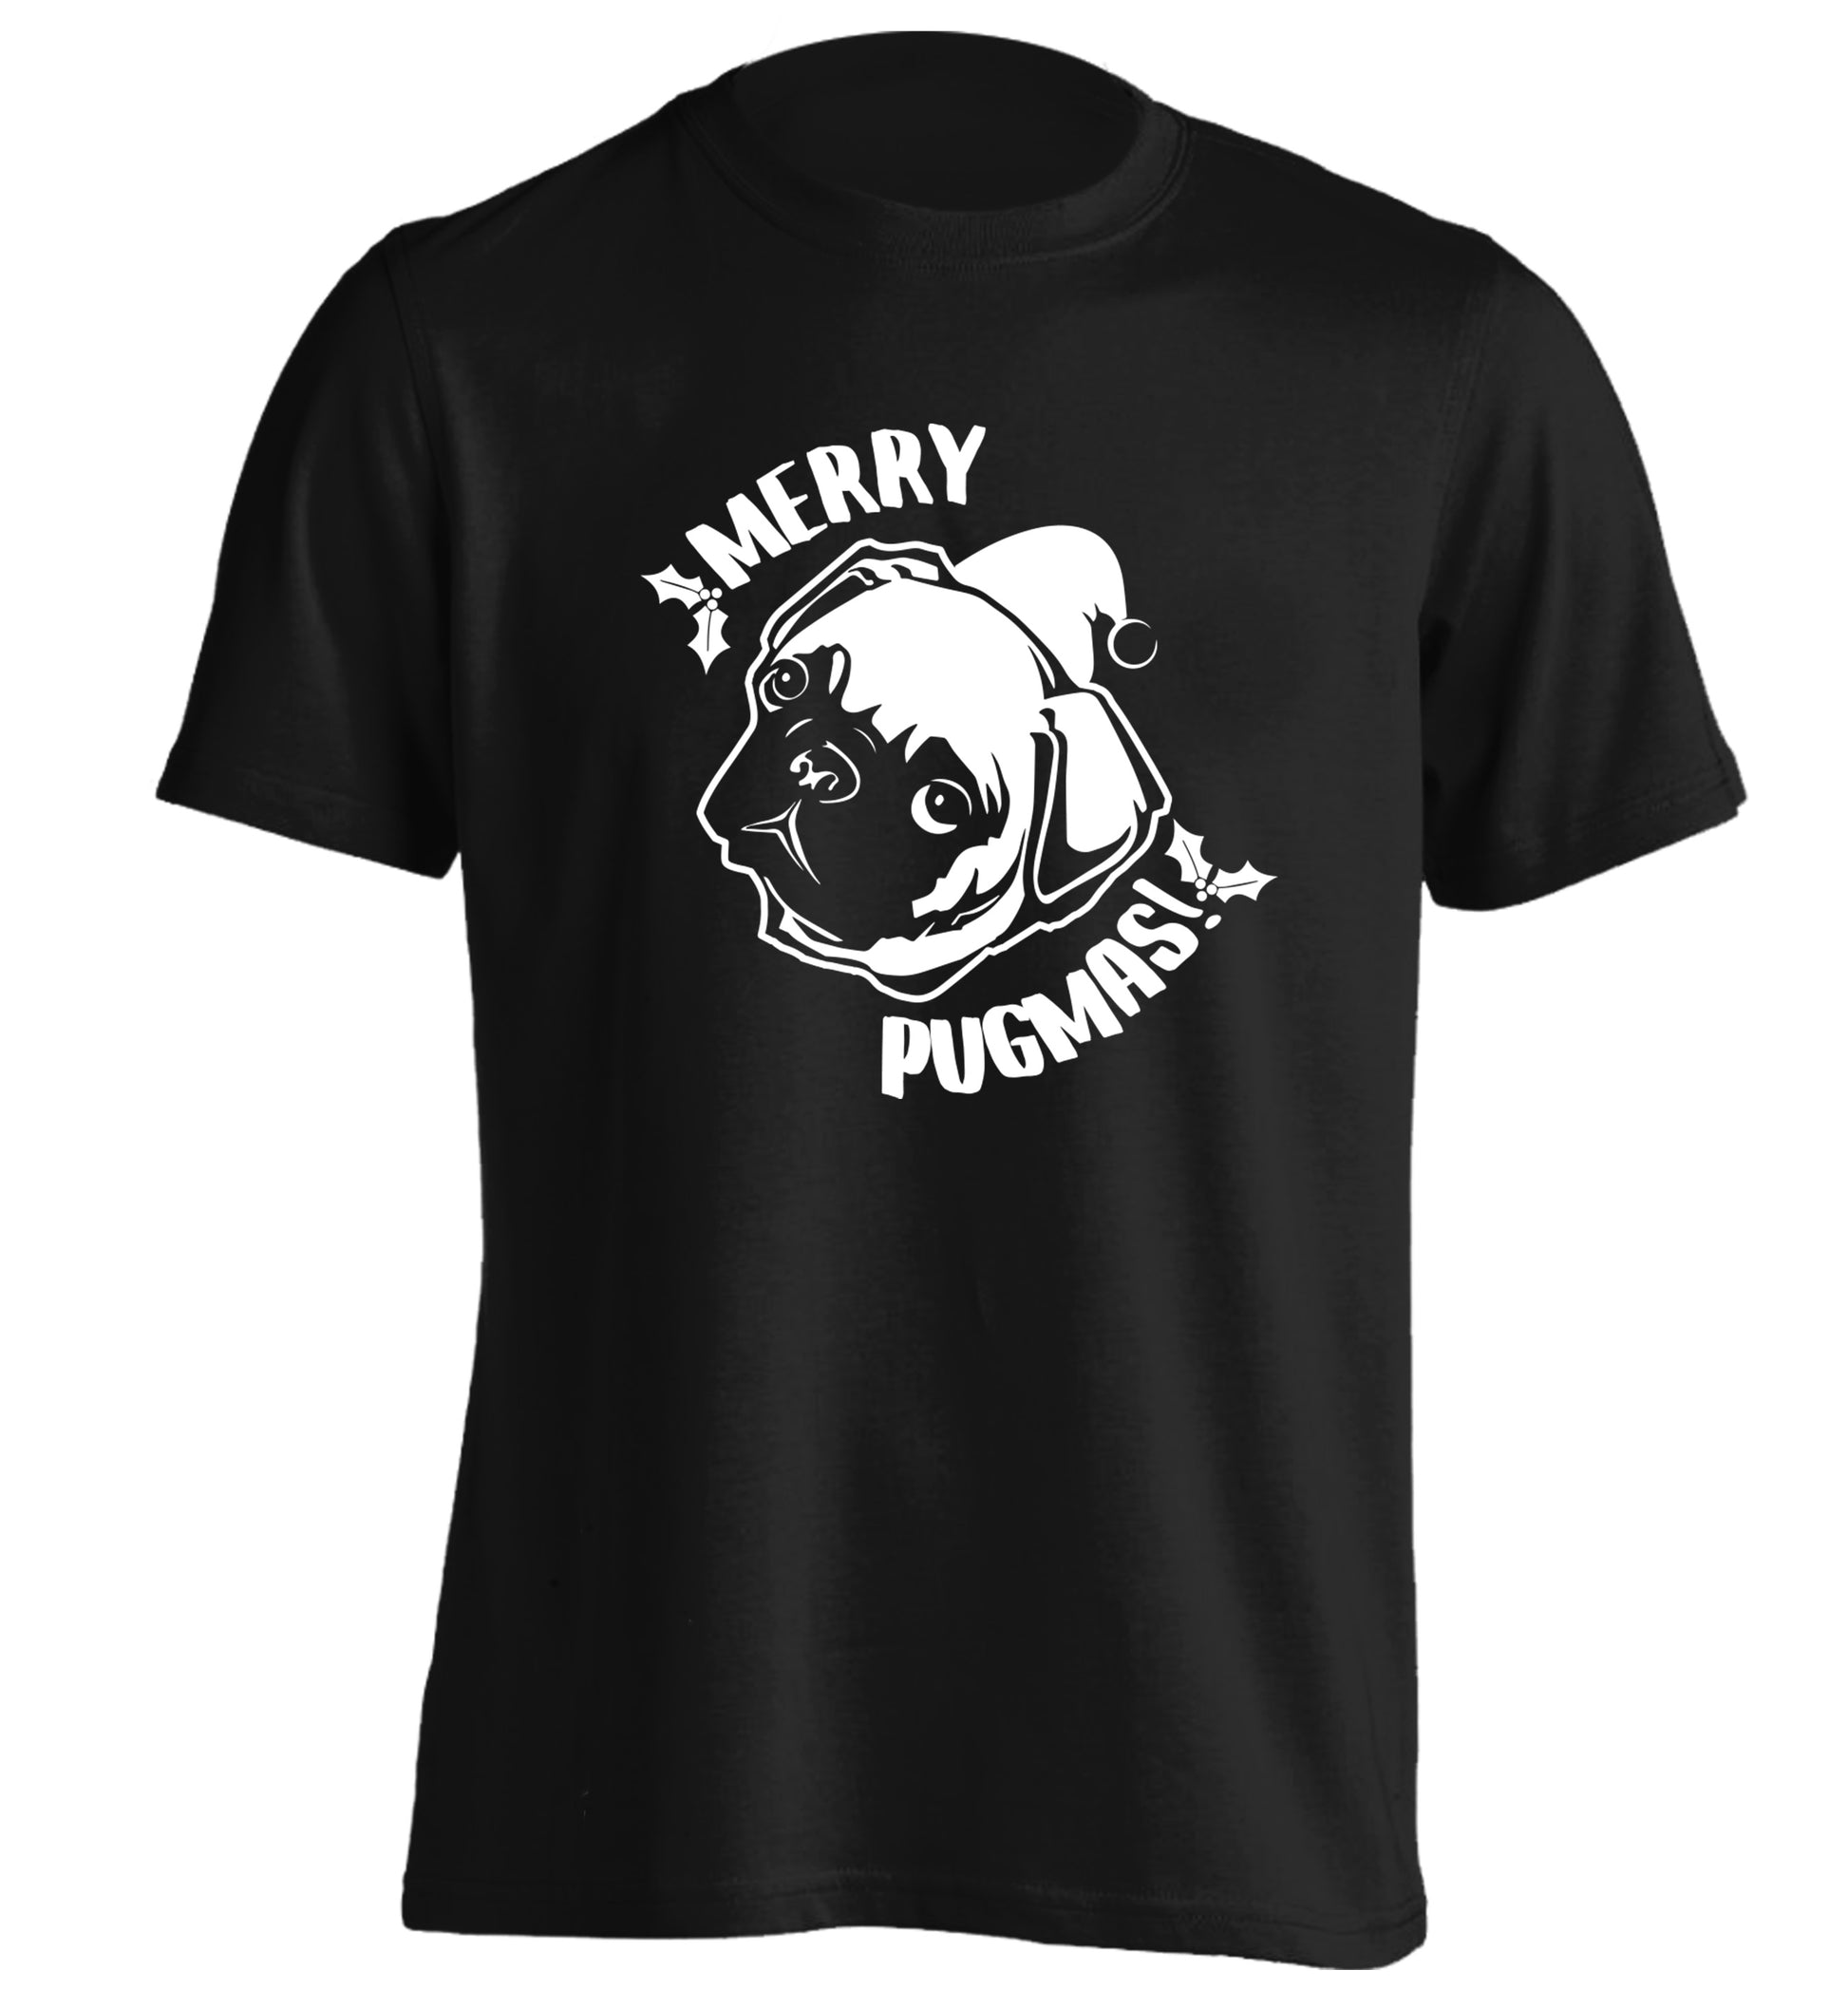 Merry Pugmas adults unisex black Tshirt 2XL